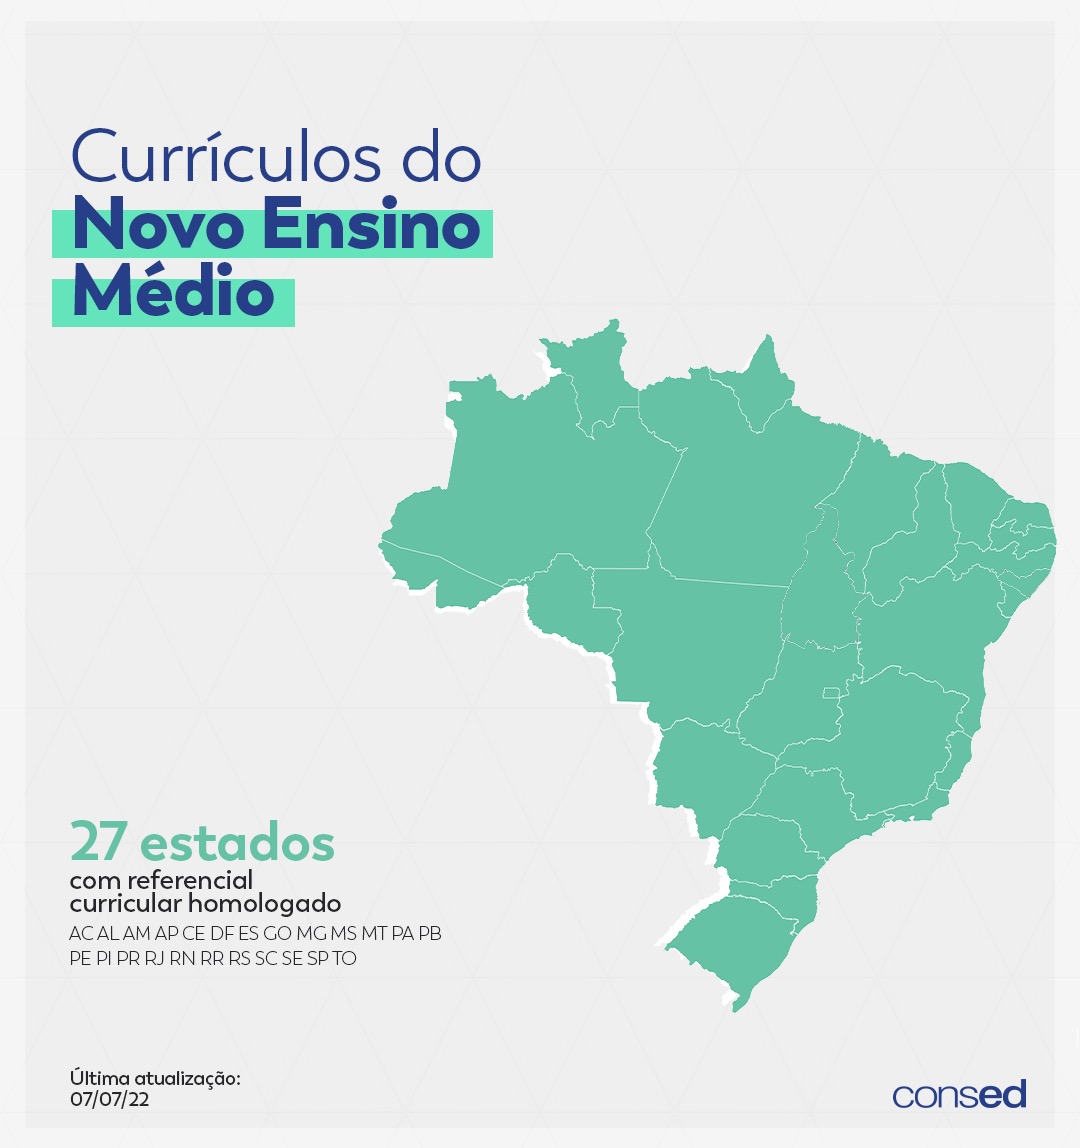 Programa São Paulo Integral está aberto a consulta pública - Centro de  Referências em Educação Integral